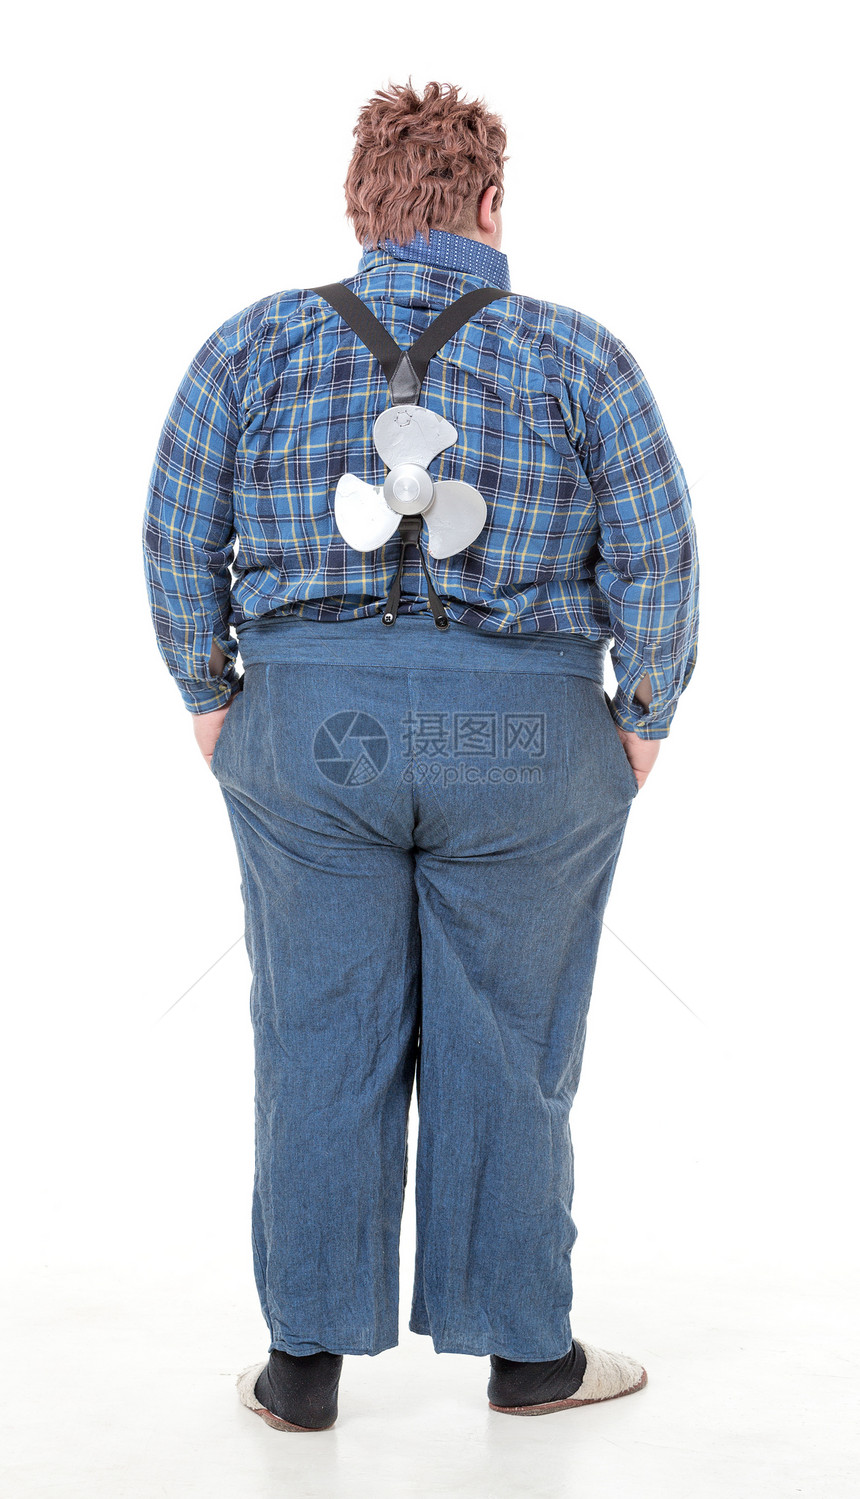 超重肥胖的年轻男子乐趣刀片虚伪乡巴佬男人享受概念螺旋桨图片